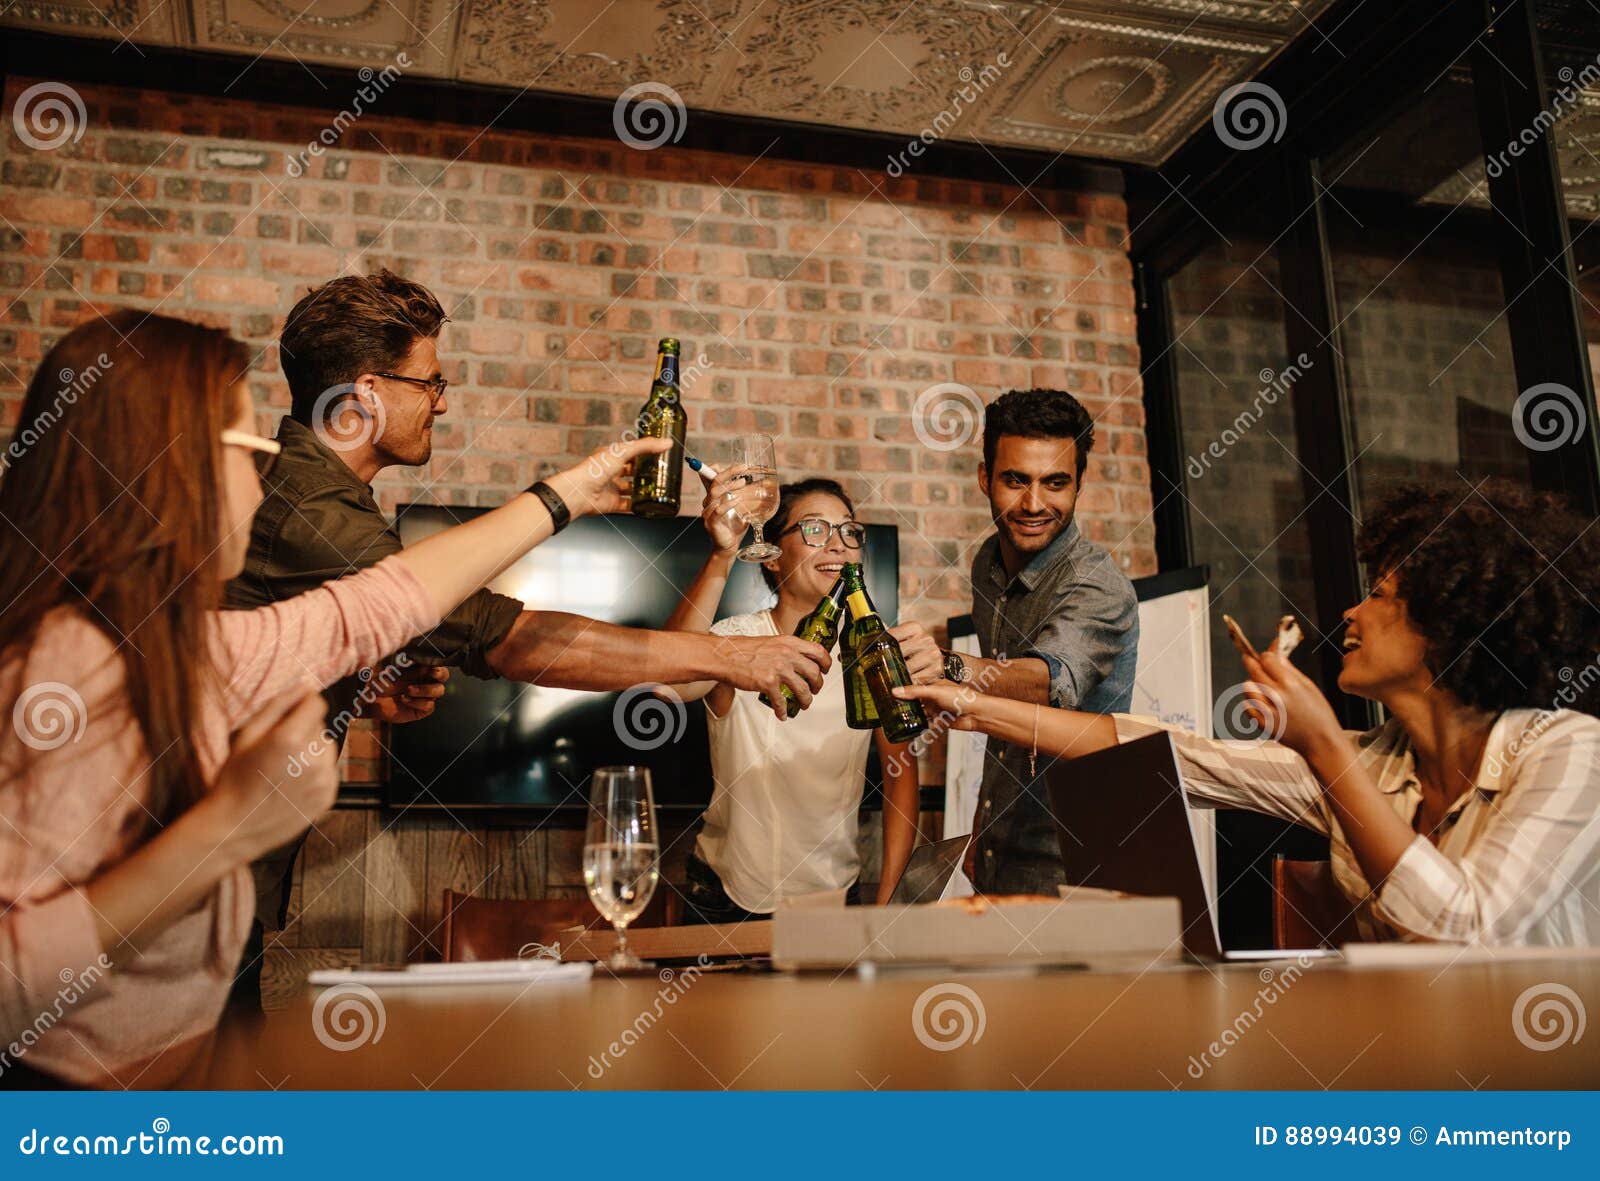 Πολυ-εθνικοί επιχειρηματίες που γιορτάζουν μια επιτυχία με τις μπύρες. Ομάδα νέων επιχειρησιακών επαγγελματιών που γιορτάζουν μια επιτυχία με τις μπύρες Διαφορετική συνεδρίαση των ομάδων ανθρώπων στη αίθουσα συνδιαλέξεων γραφείων ξεκινήματος που έχει τα ποτά πέρα από την επιτυχή επιχειρησιακή διαπραγμάτευση